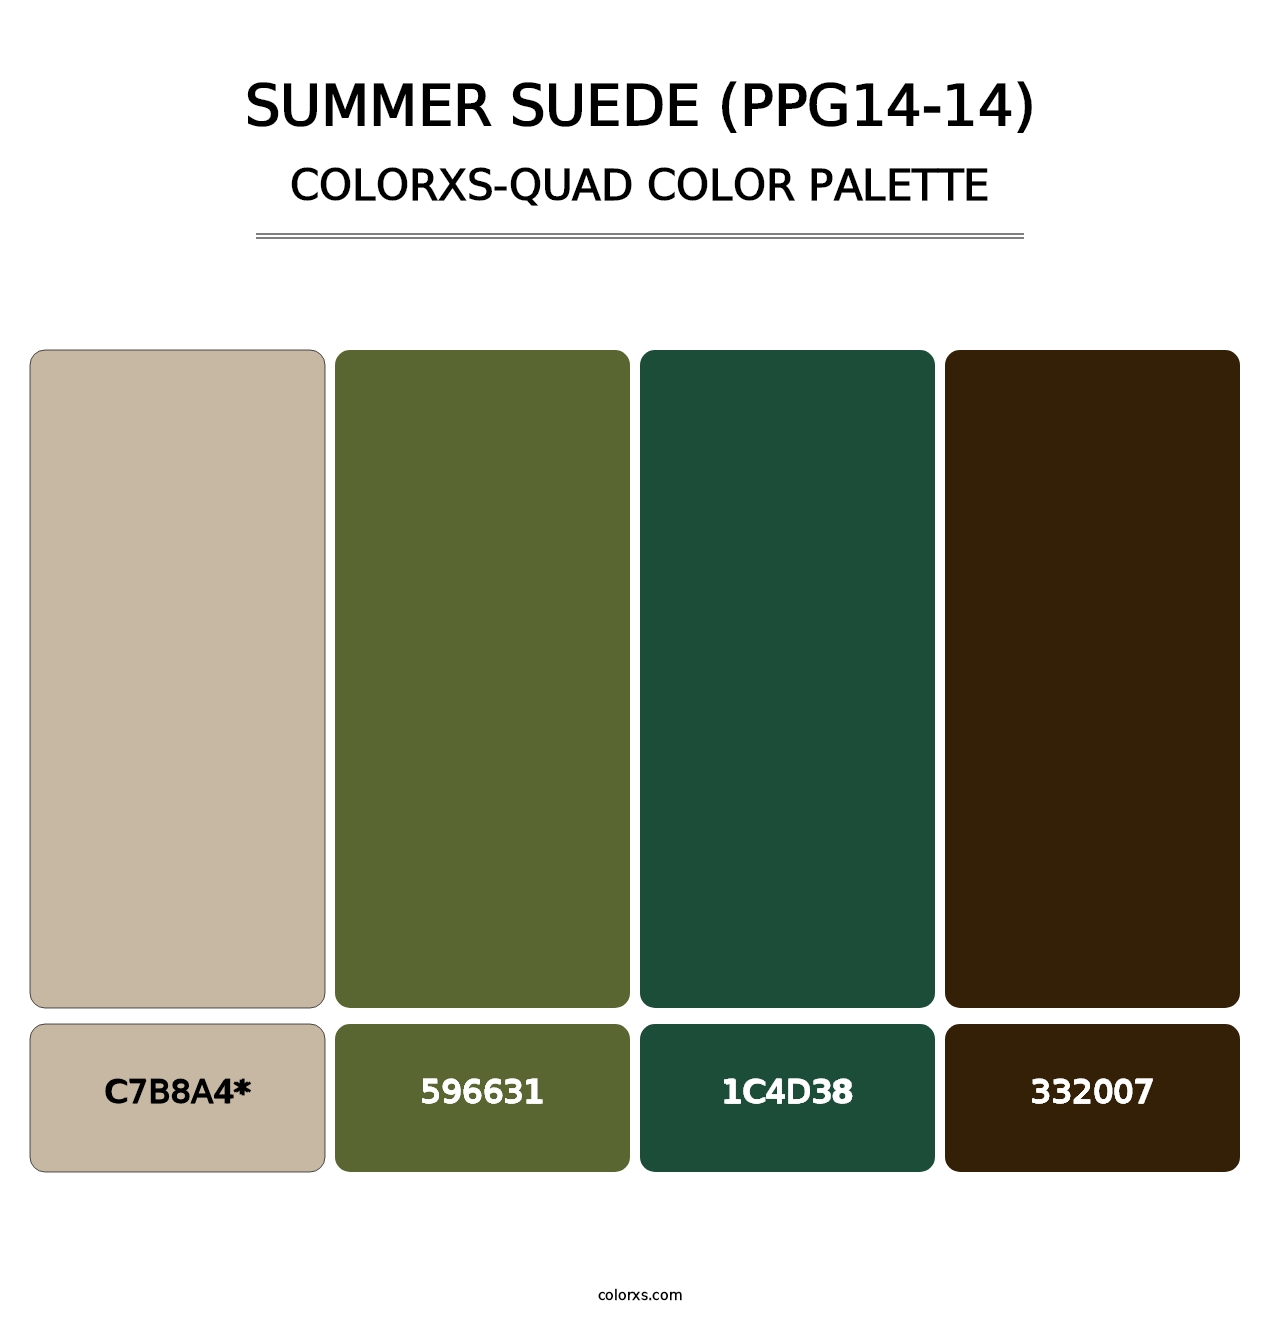 Summer Suede (PPG14-14) - Colorxs Quad Palette